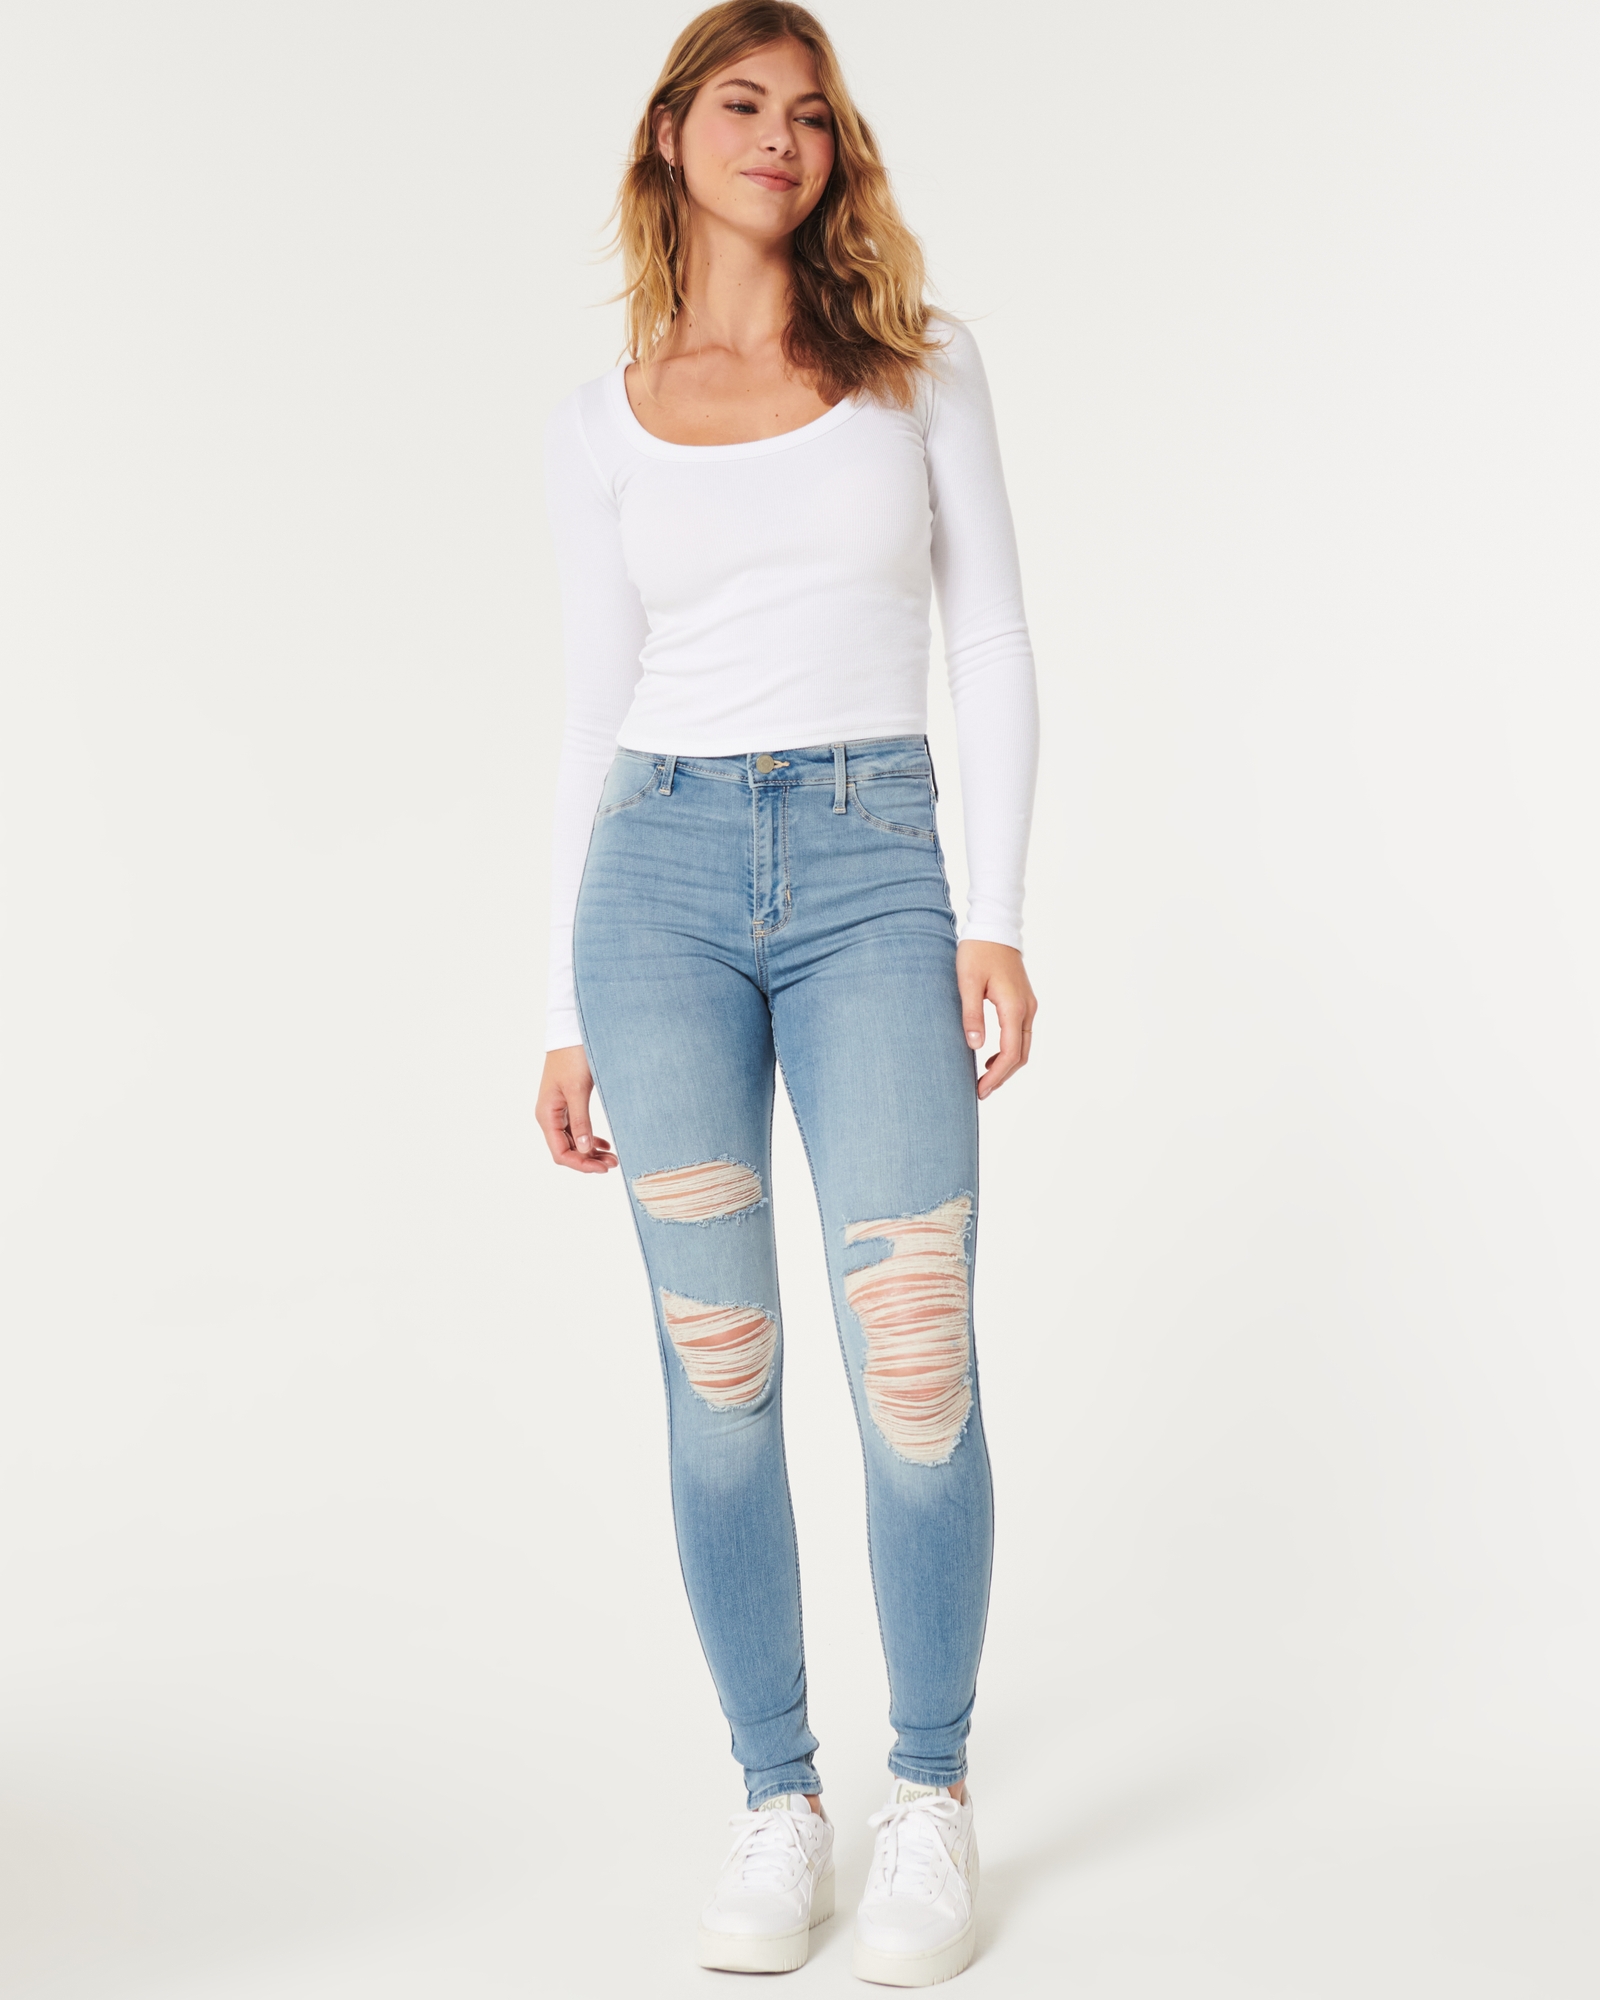 Hollister Size 3L 26x30 low rise leggings blue jean